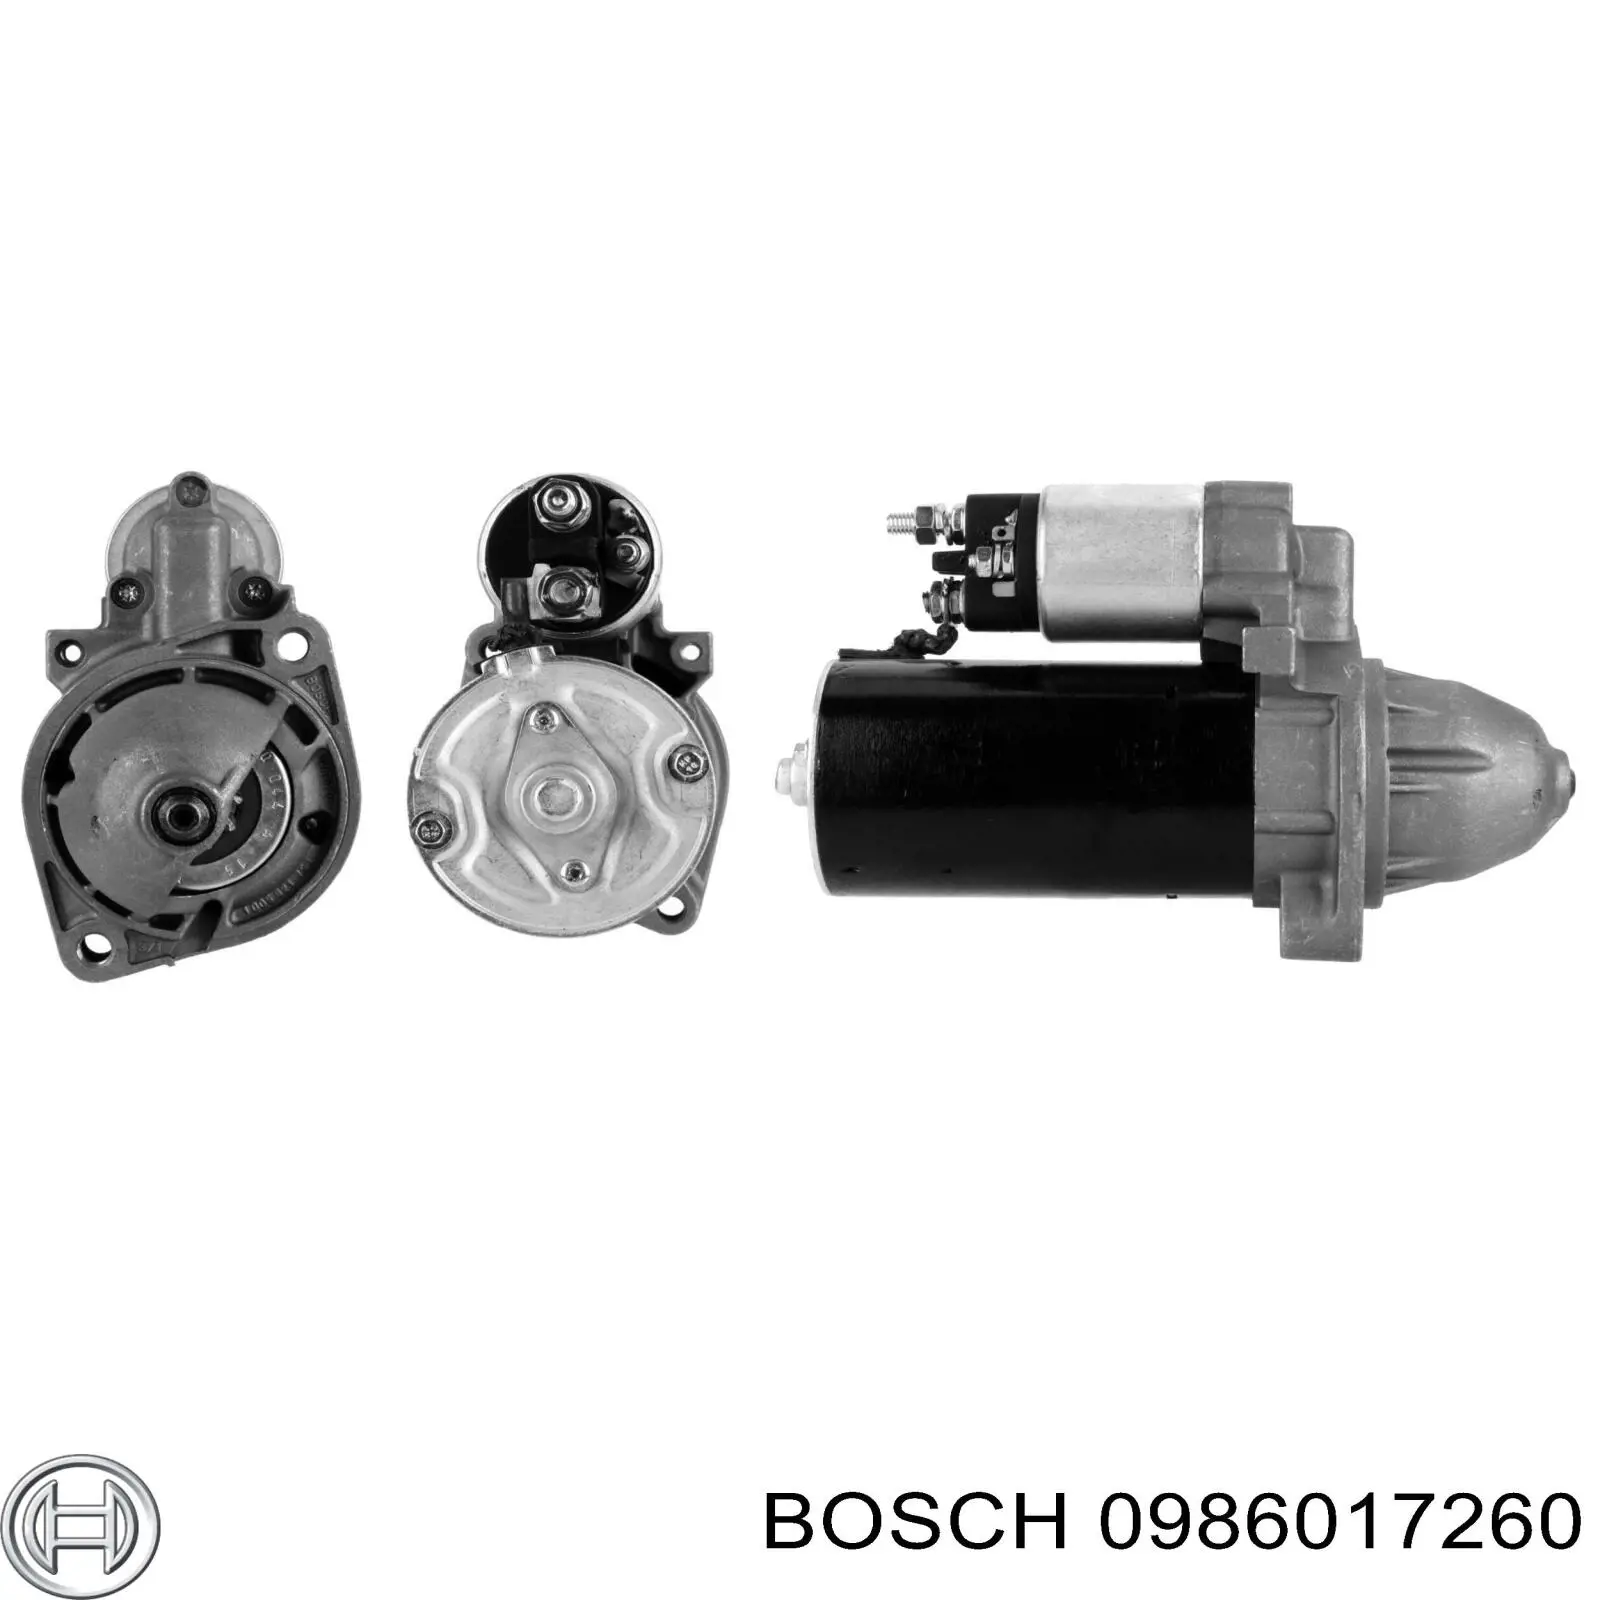 0986017260 Bosch motor de arranque